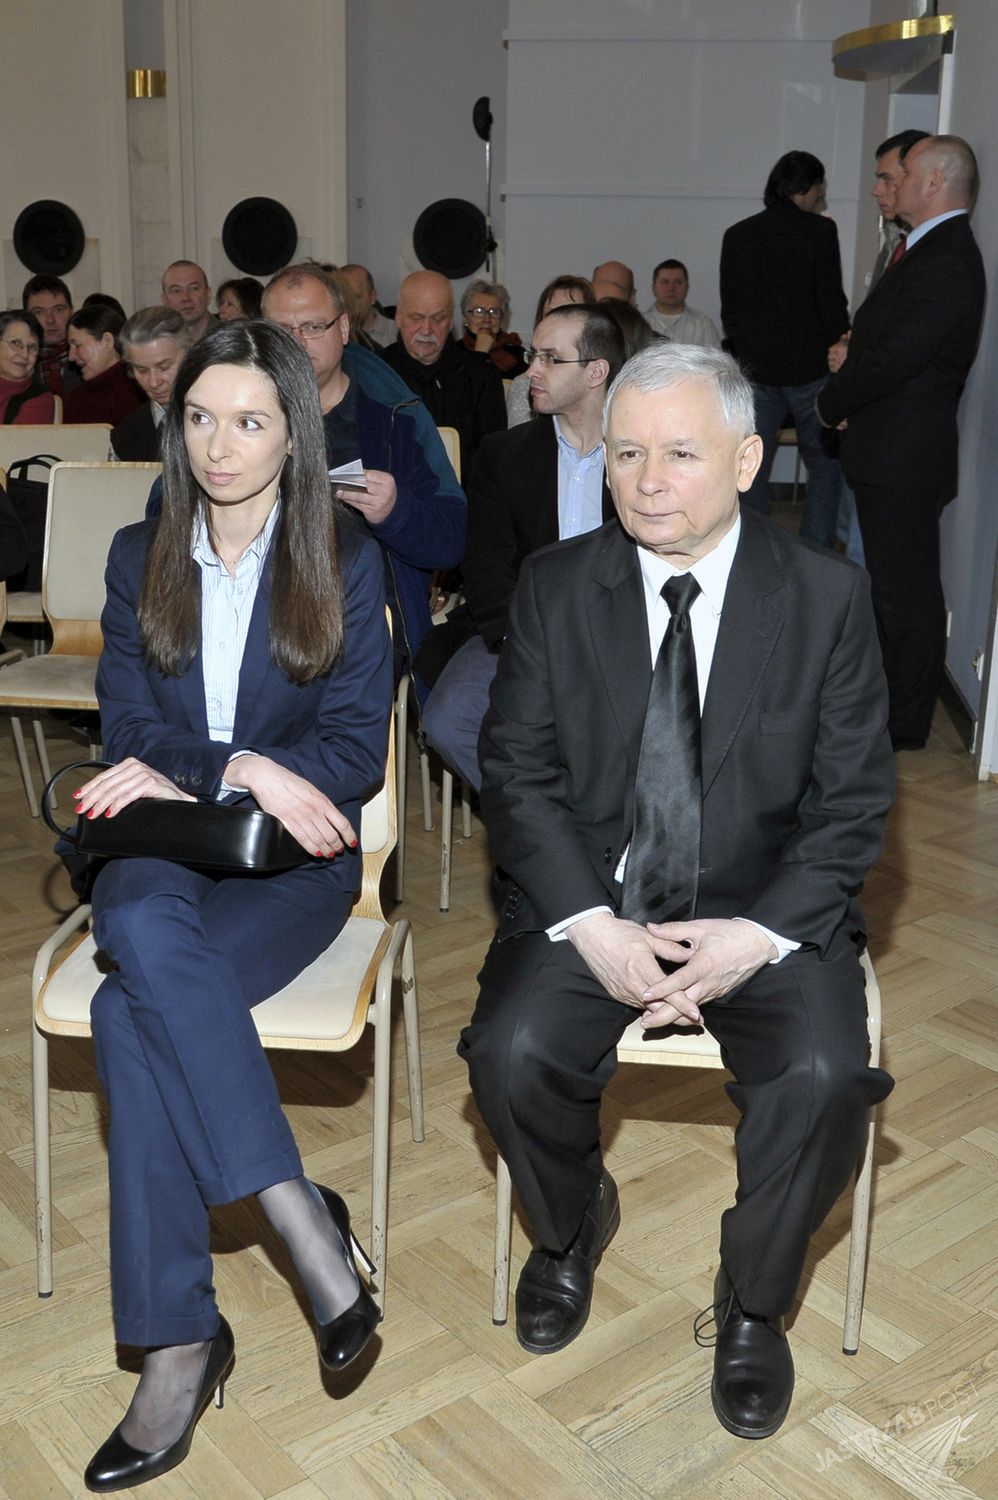 Marta Kaczyńska i Jarosław Kaczyński